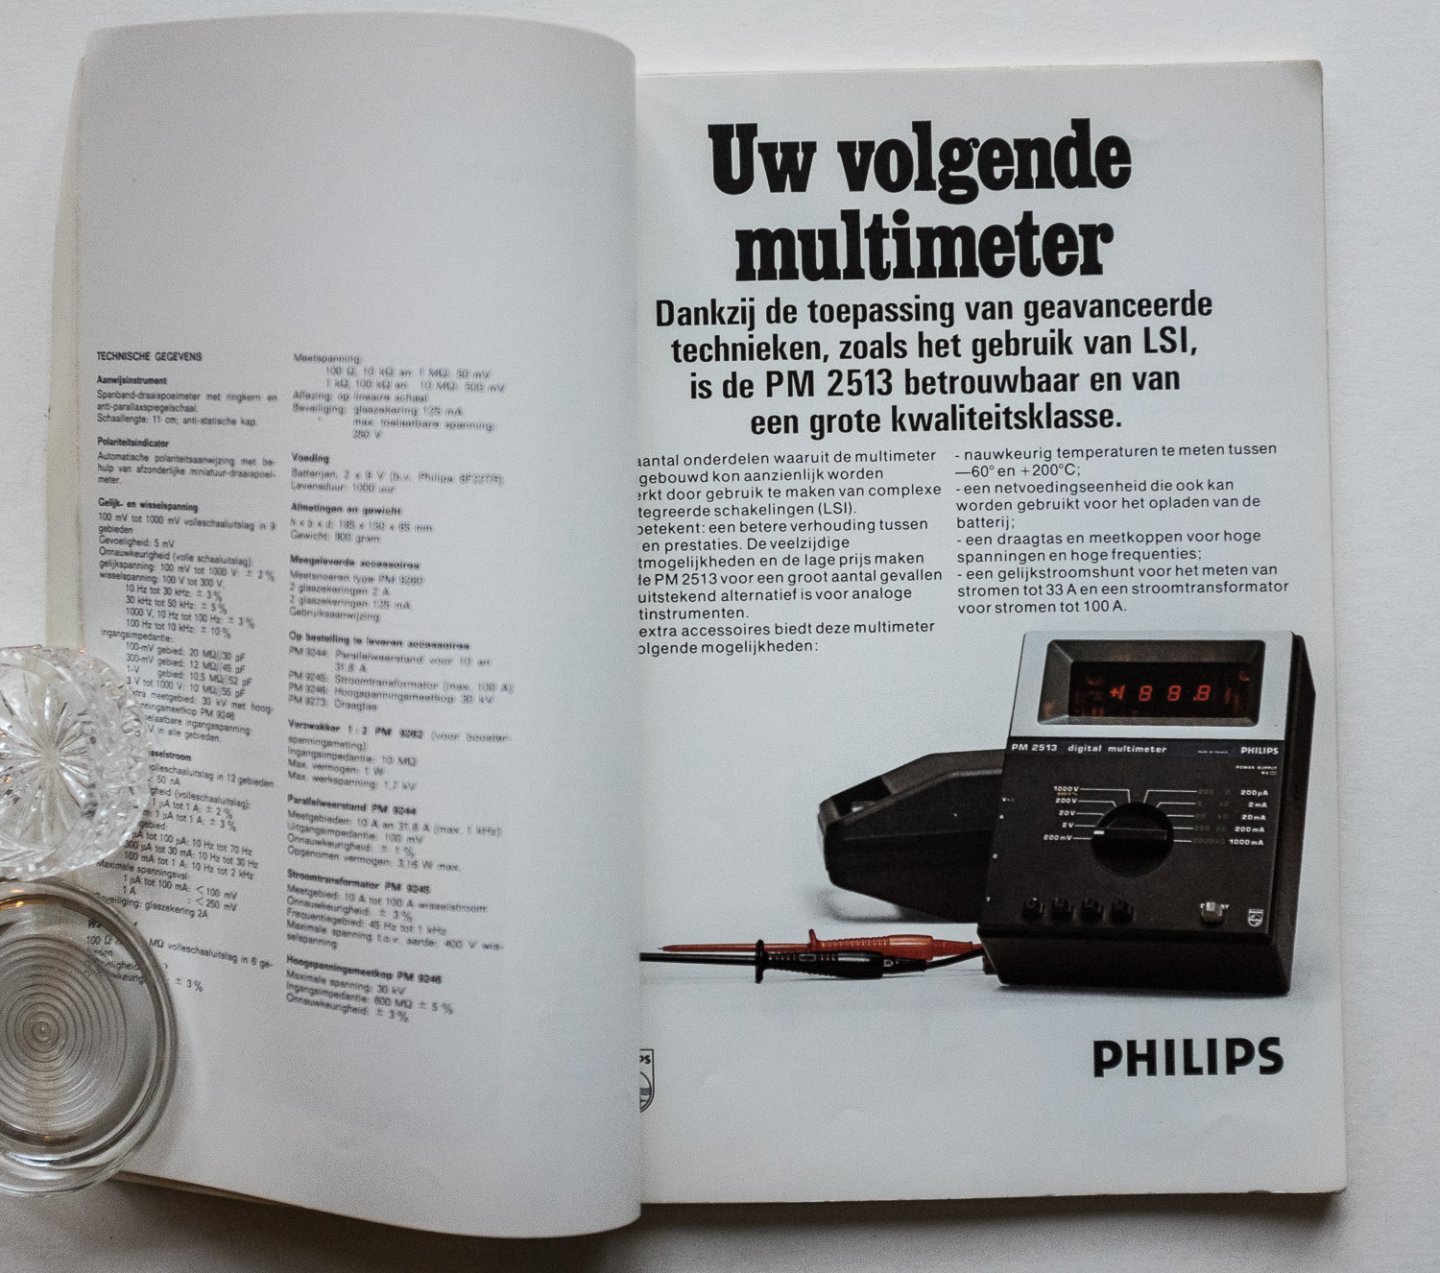 Philips Gloeilampenfabrieken Nederland n.v., Eindhoven - Catalogus Service meetapparaten